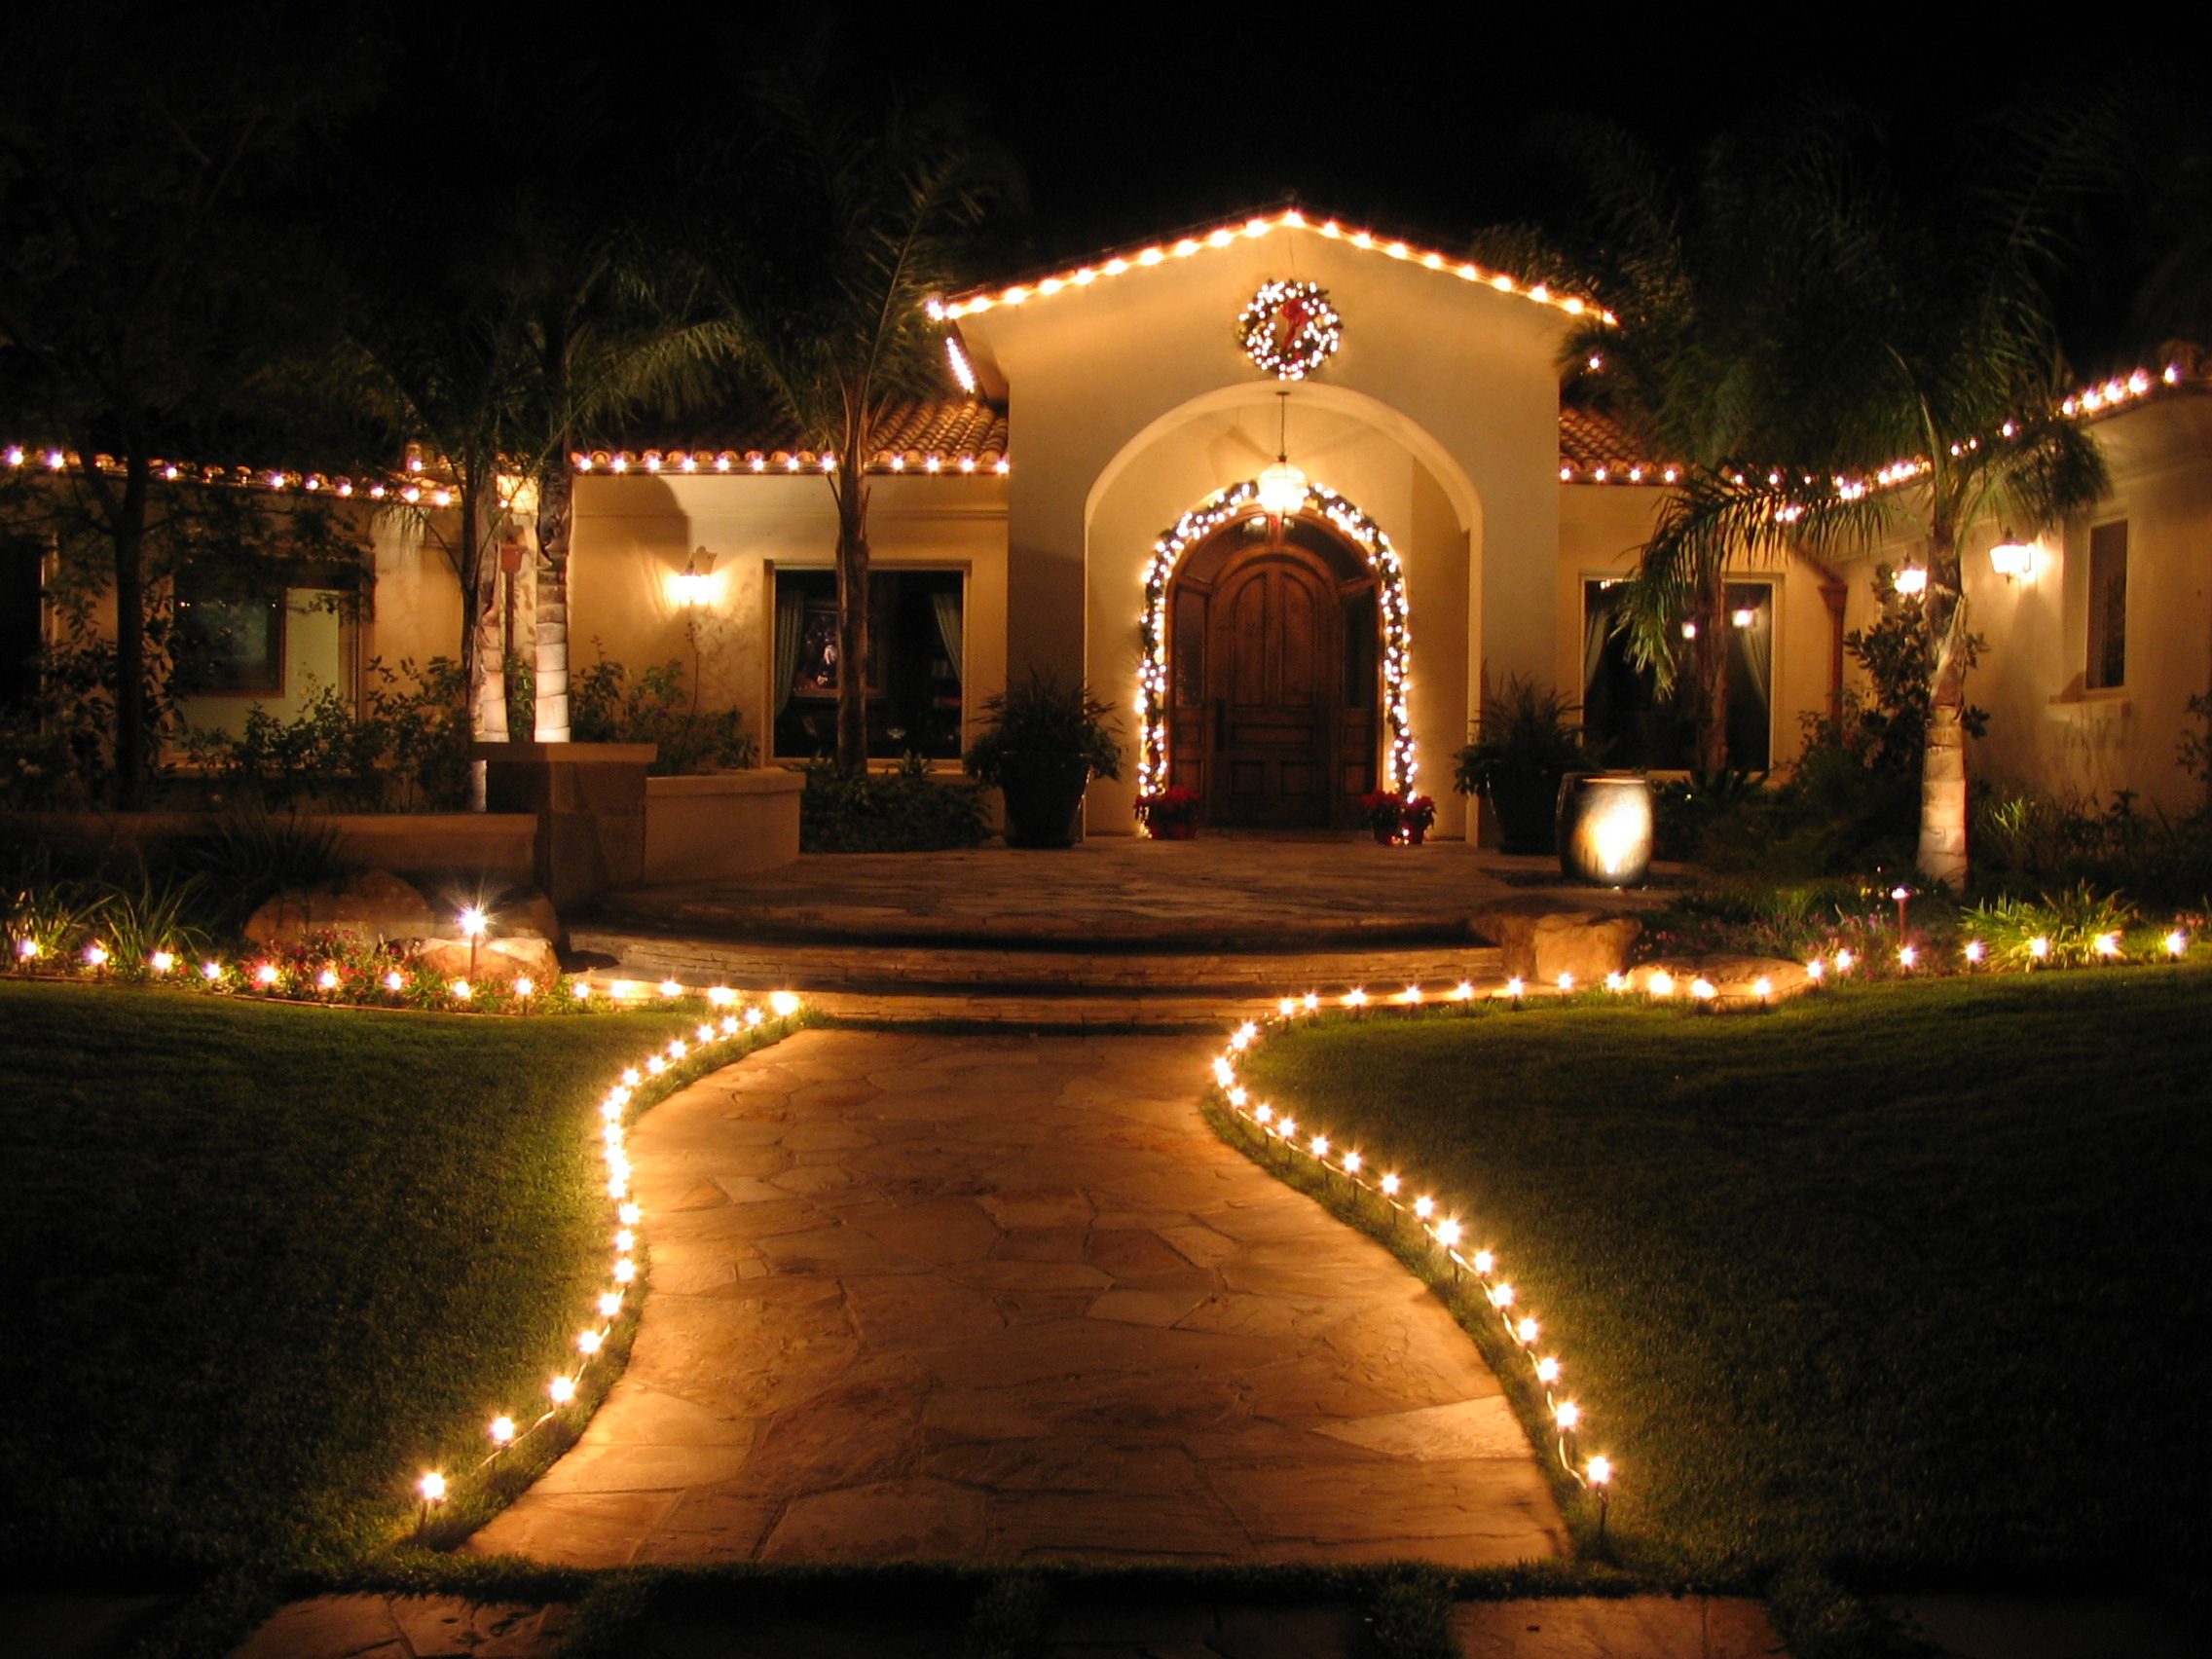 Professional Christmas Lighting on home and walkway.